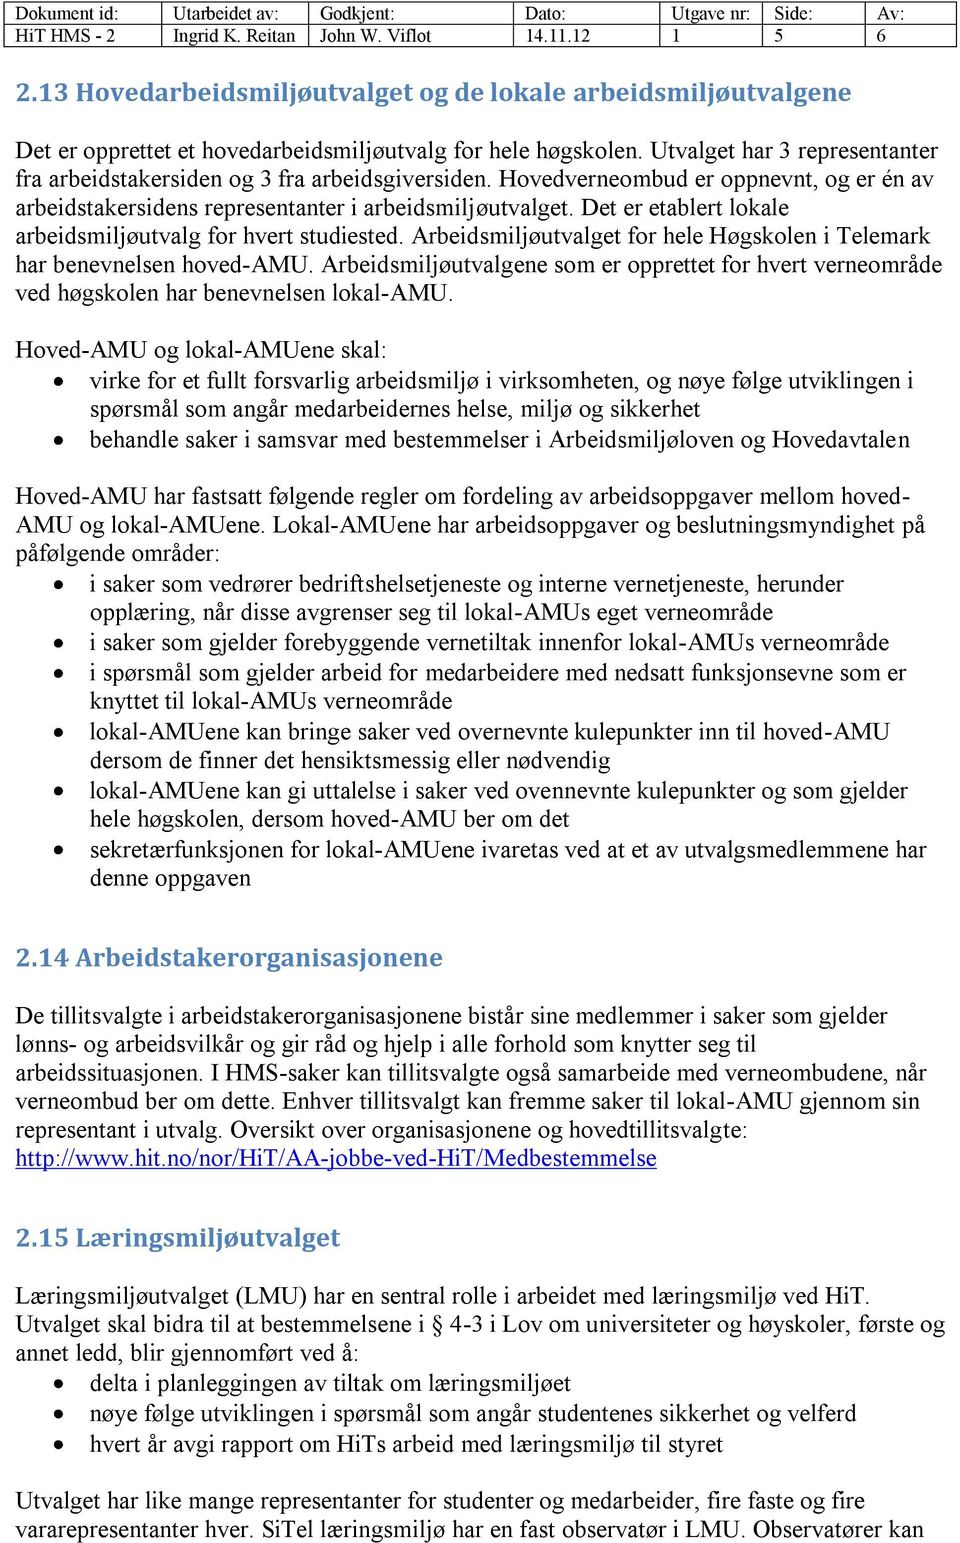 Det er etablert lokale arbeidsmiljøutvalg for hvert studiested. Arbeidsmiljøutvalget for hele Høgskolen i Telemark har benevnelsen hoved-amu.